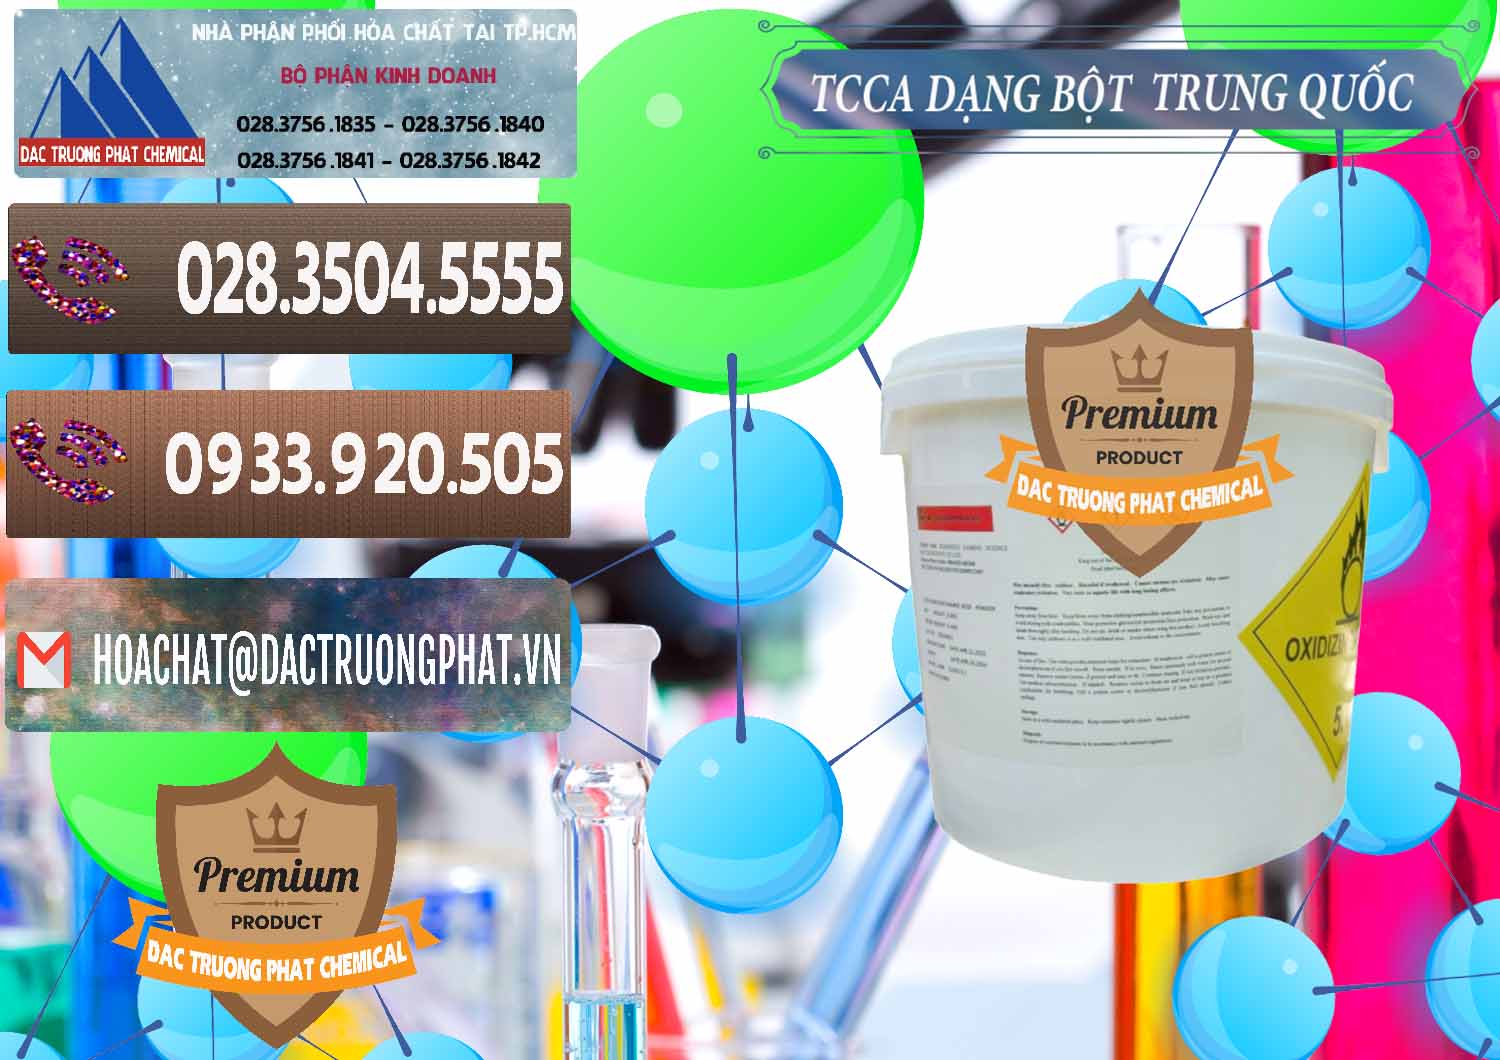 Đơn vị chuyên kinh doanh và bán TCCA - Acid Trichloroisocyanuric Dạng Bột Thùng 5kg Trung Quốc China - 0378 - Bán và phân phối hóa chất tại TP.HCM - hoachatviet.net